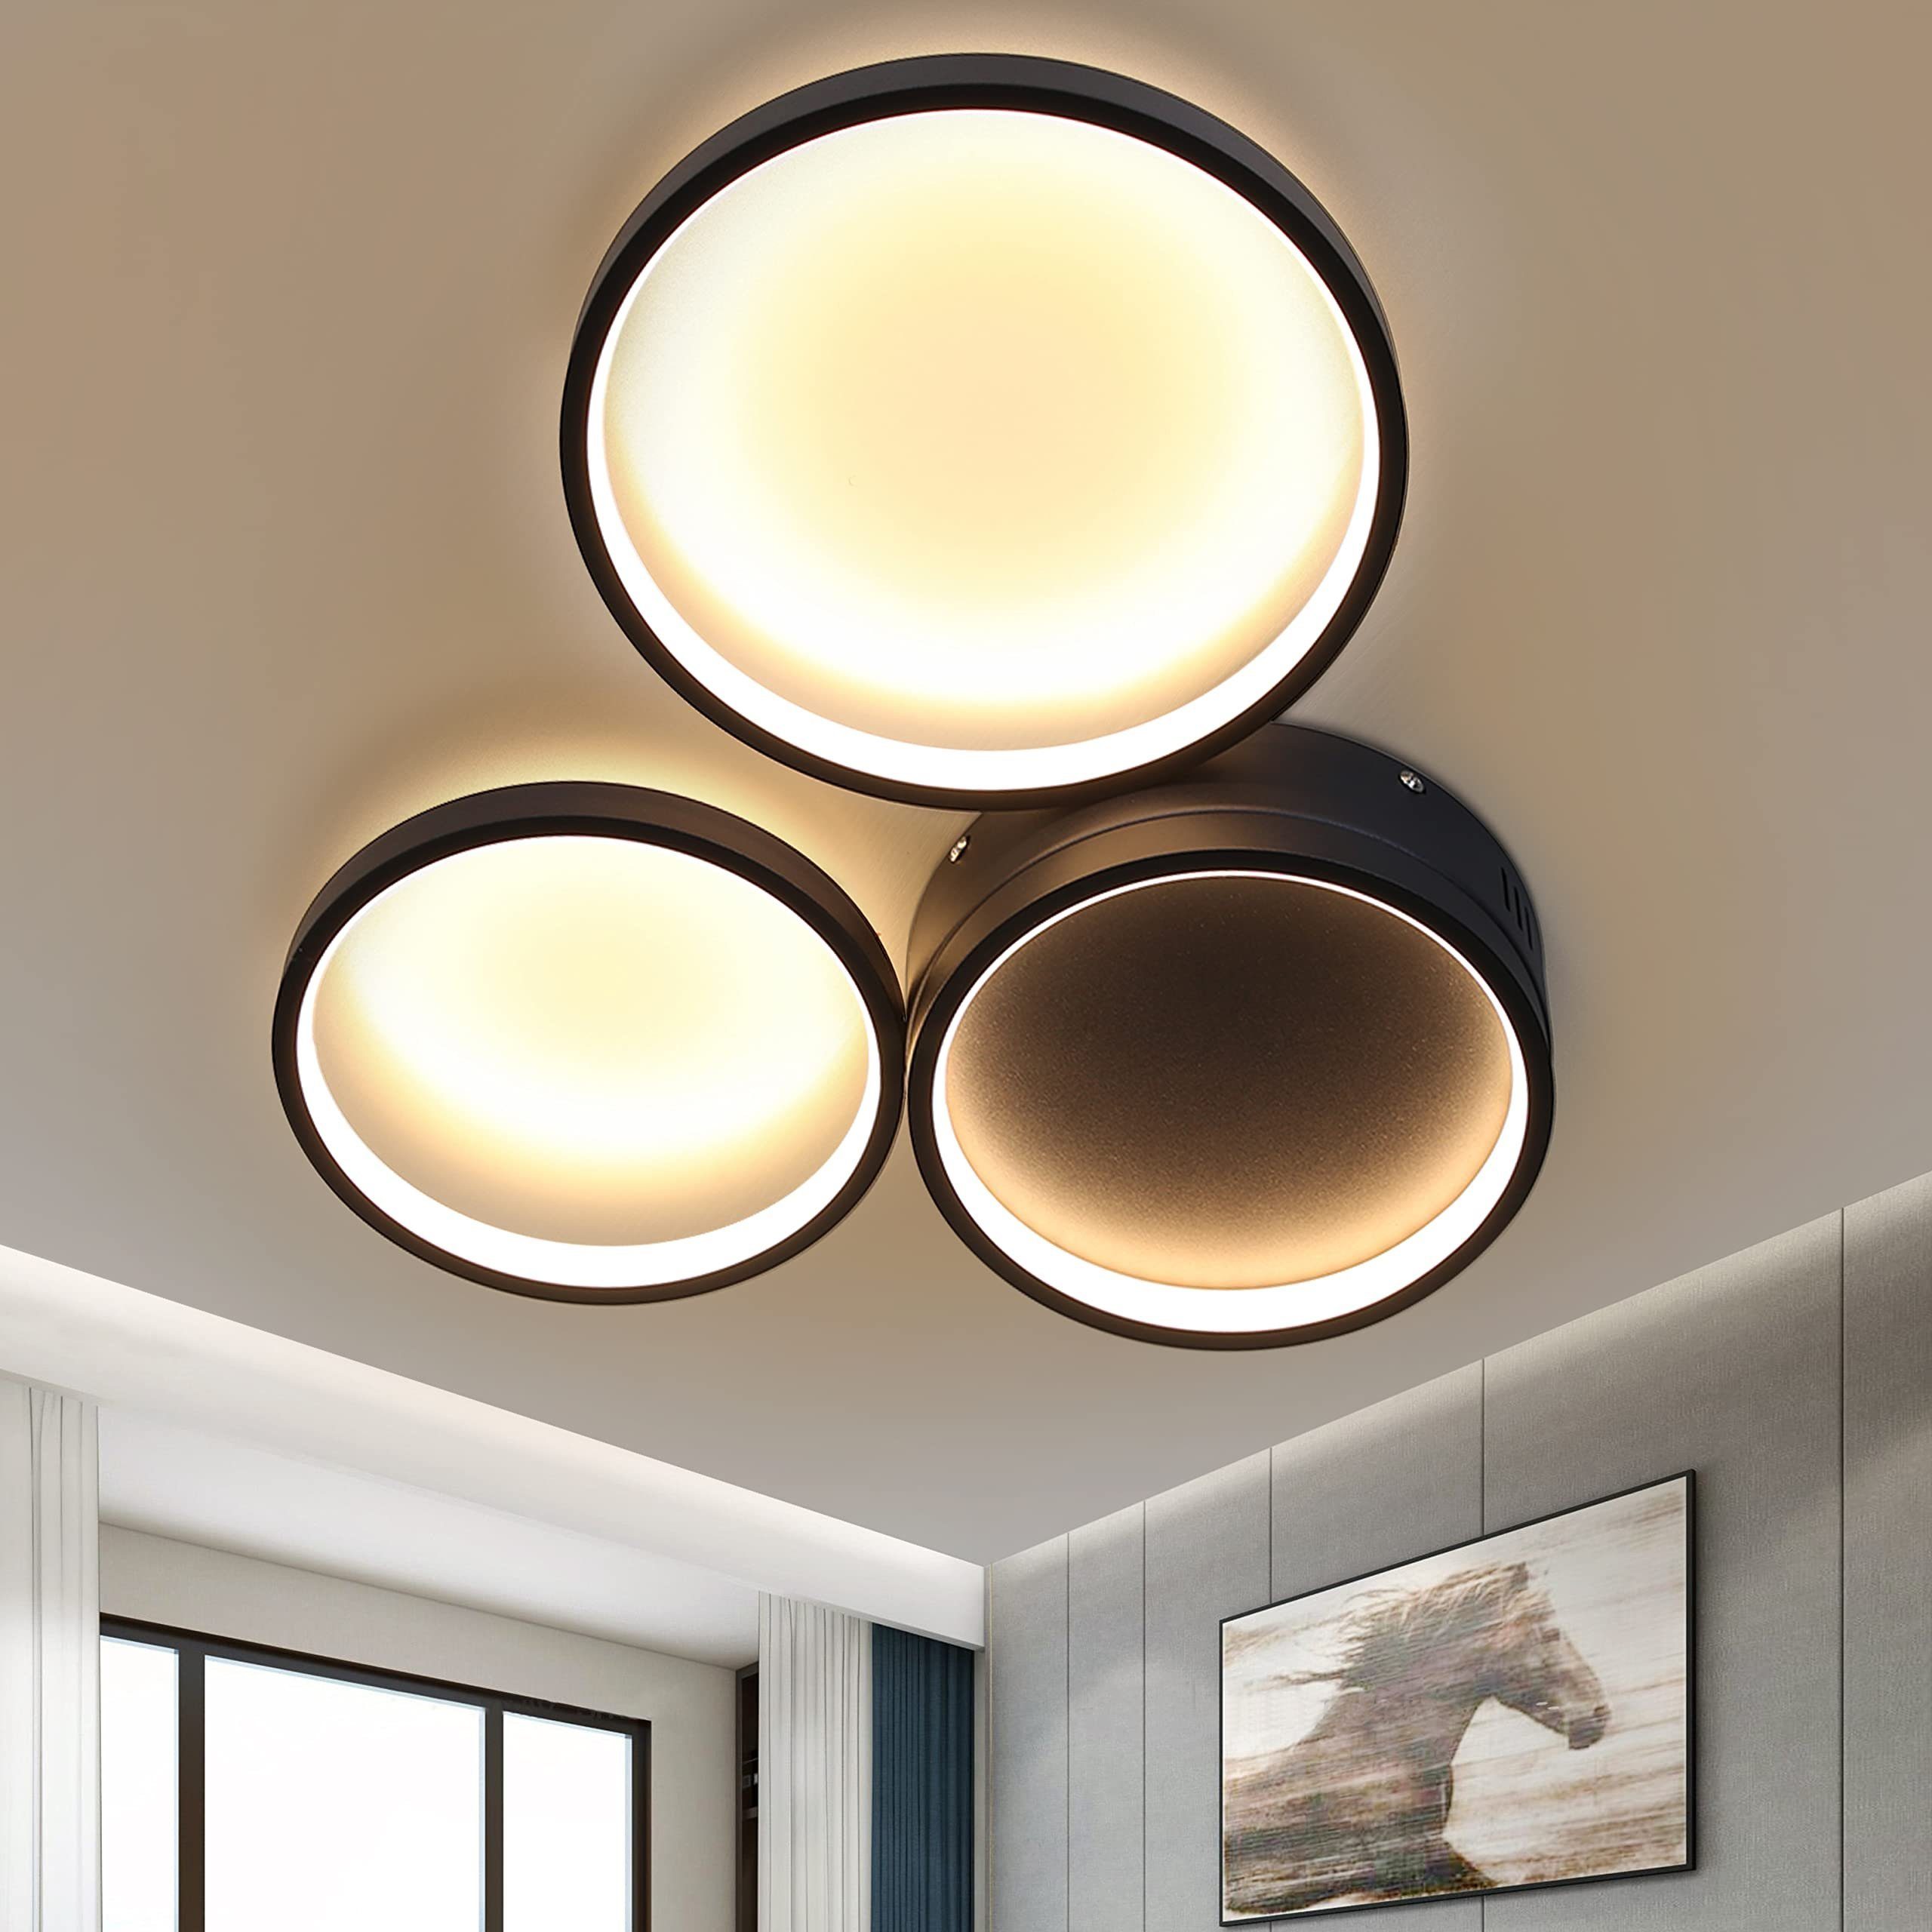 Deckenleuchte LED Deckenlampe Moderne Design Wohnzimmerlampe Beleuchtung Lampe 